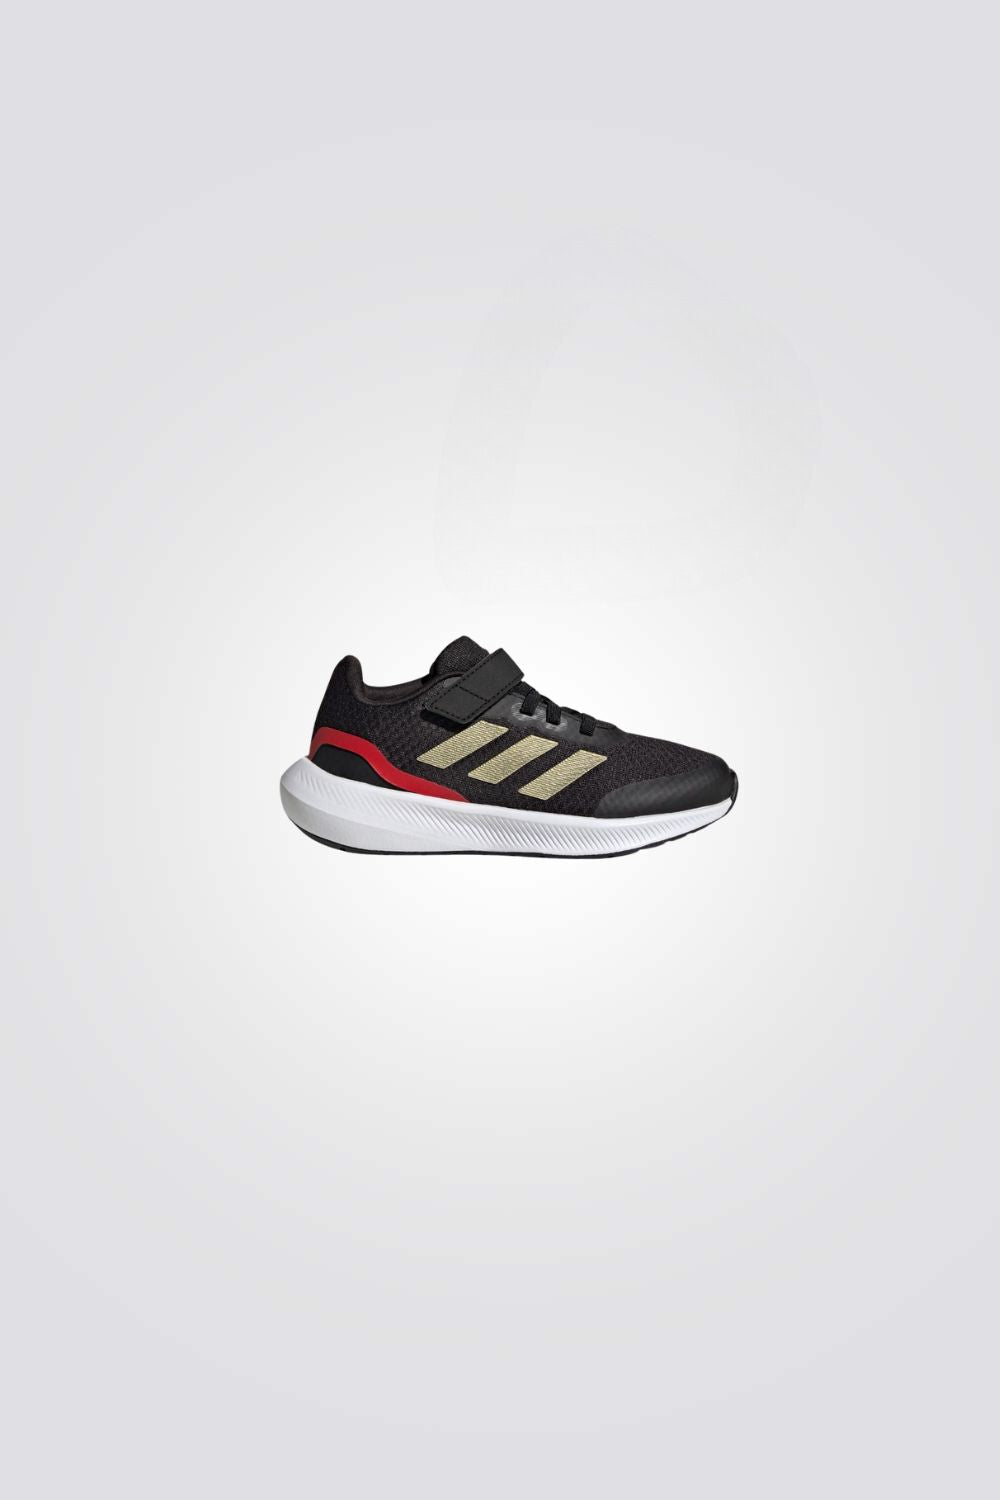 נעלי ספורט לילדים RUNFALCON 3.0 בצבע שחור וזהב